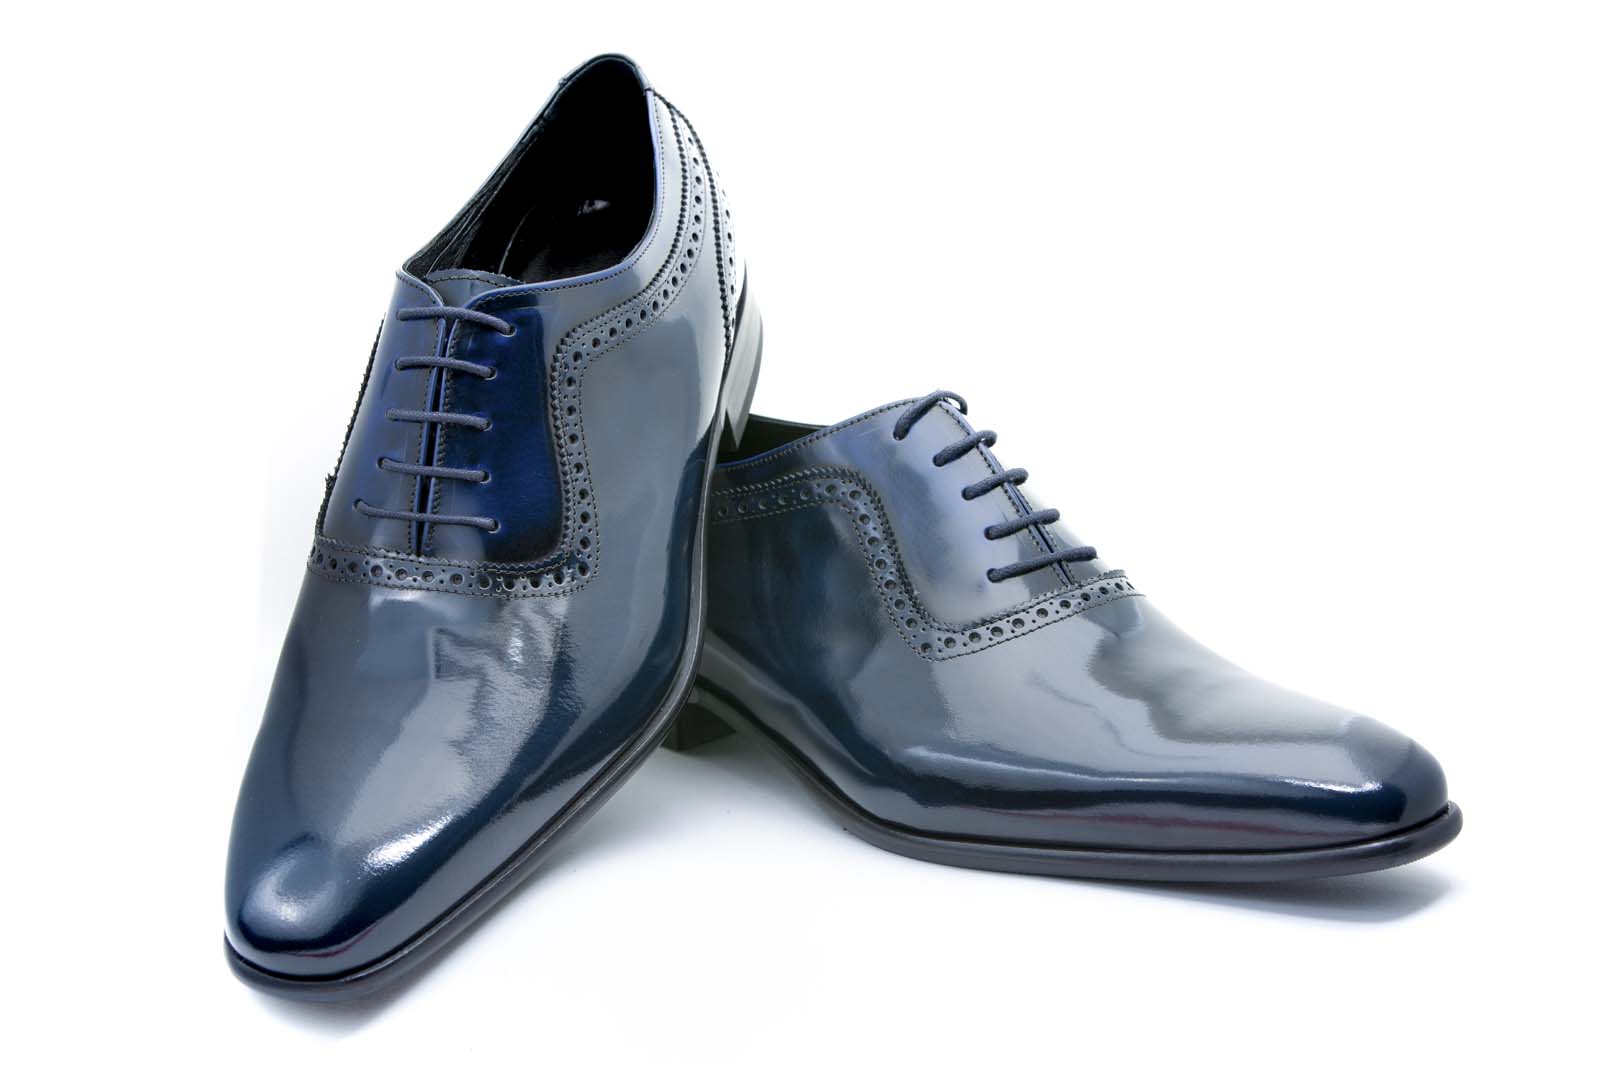 Zapatos de novio modelo Oxford azul antik